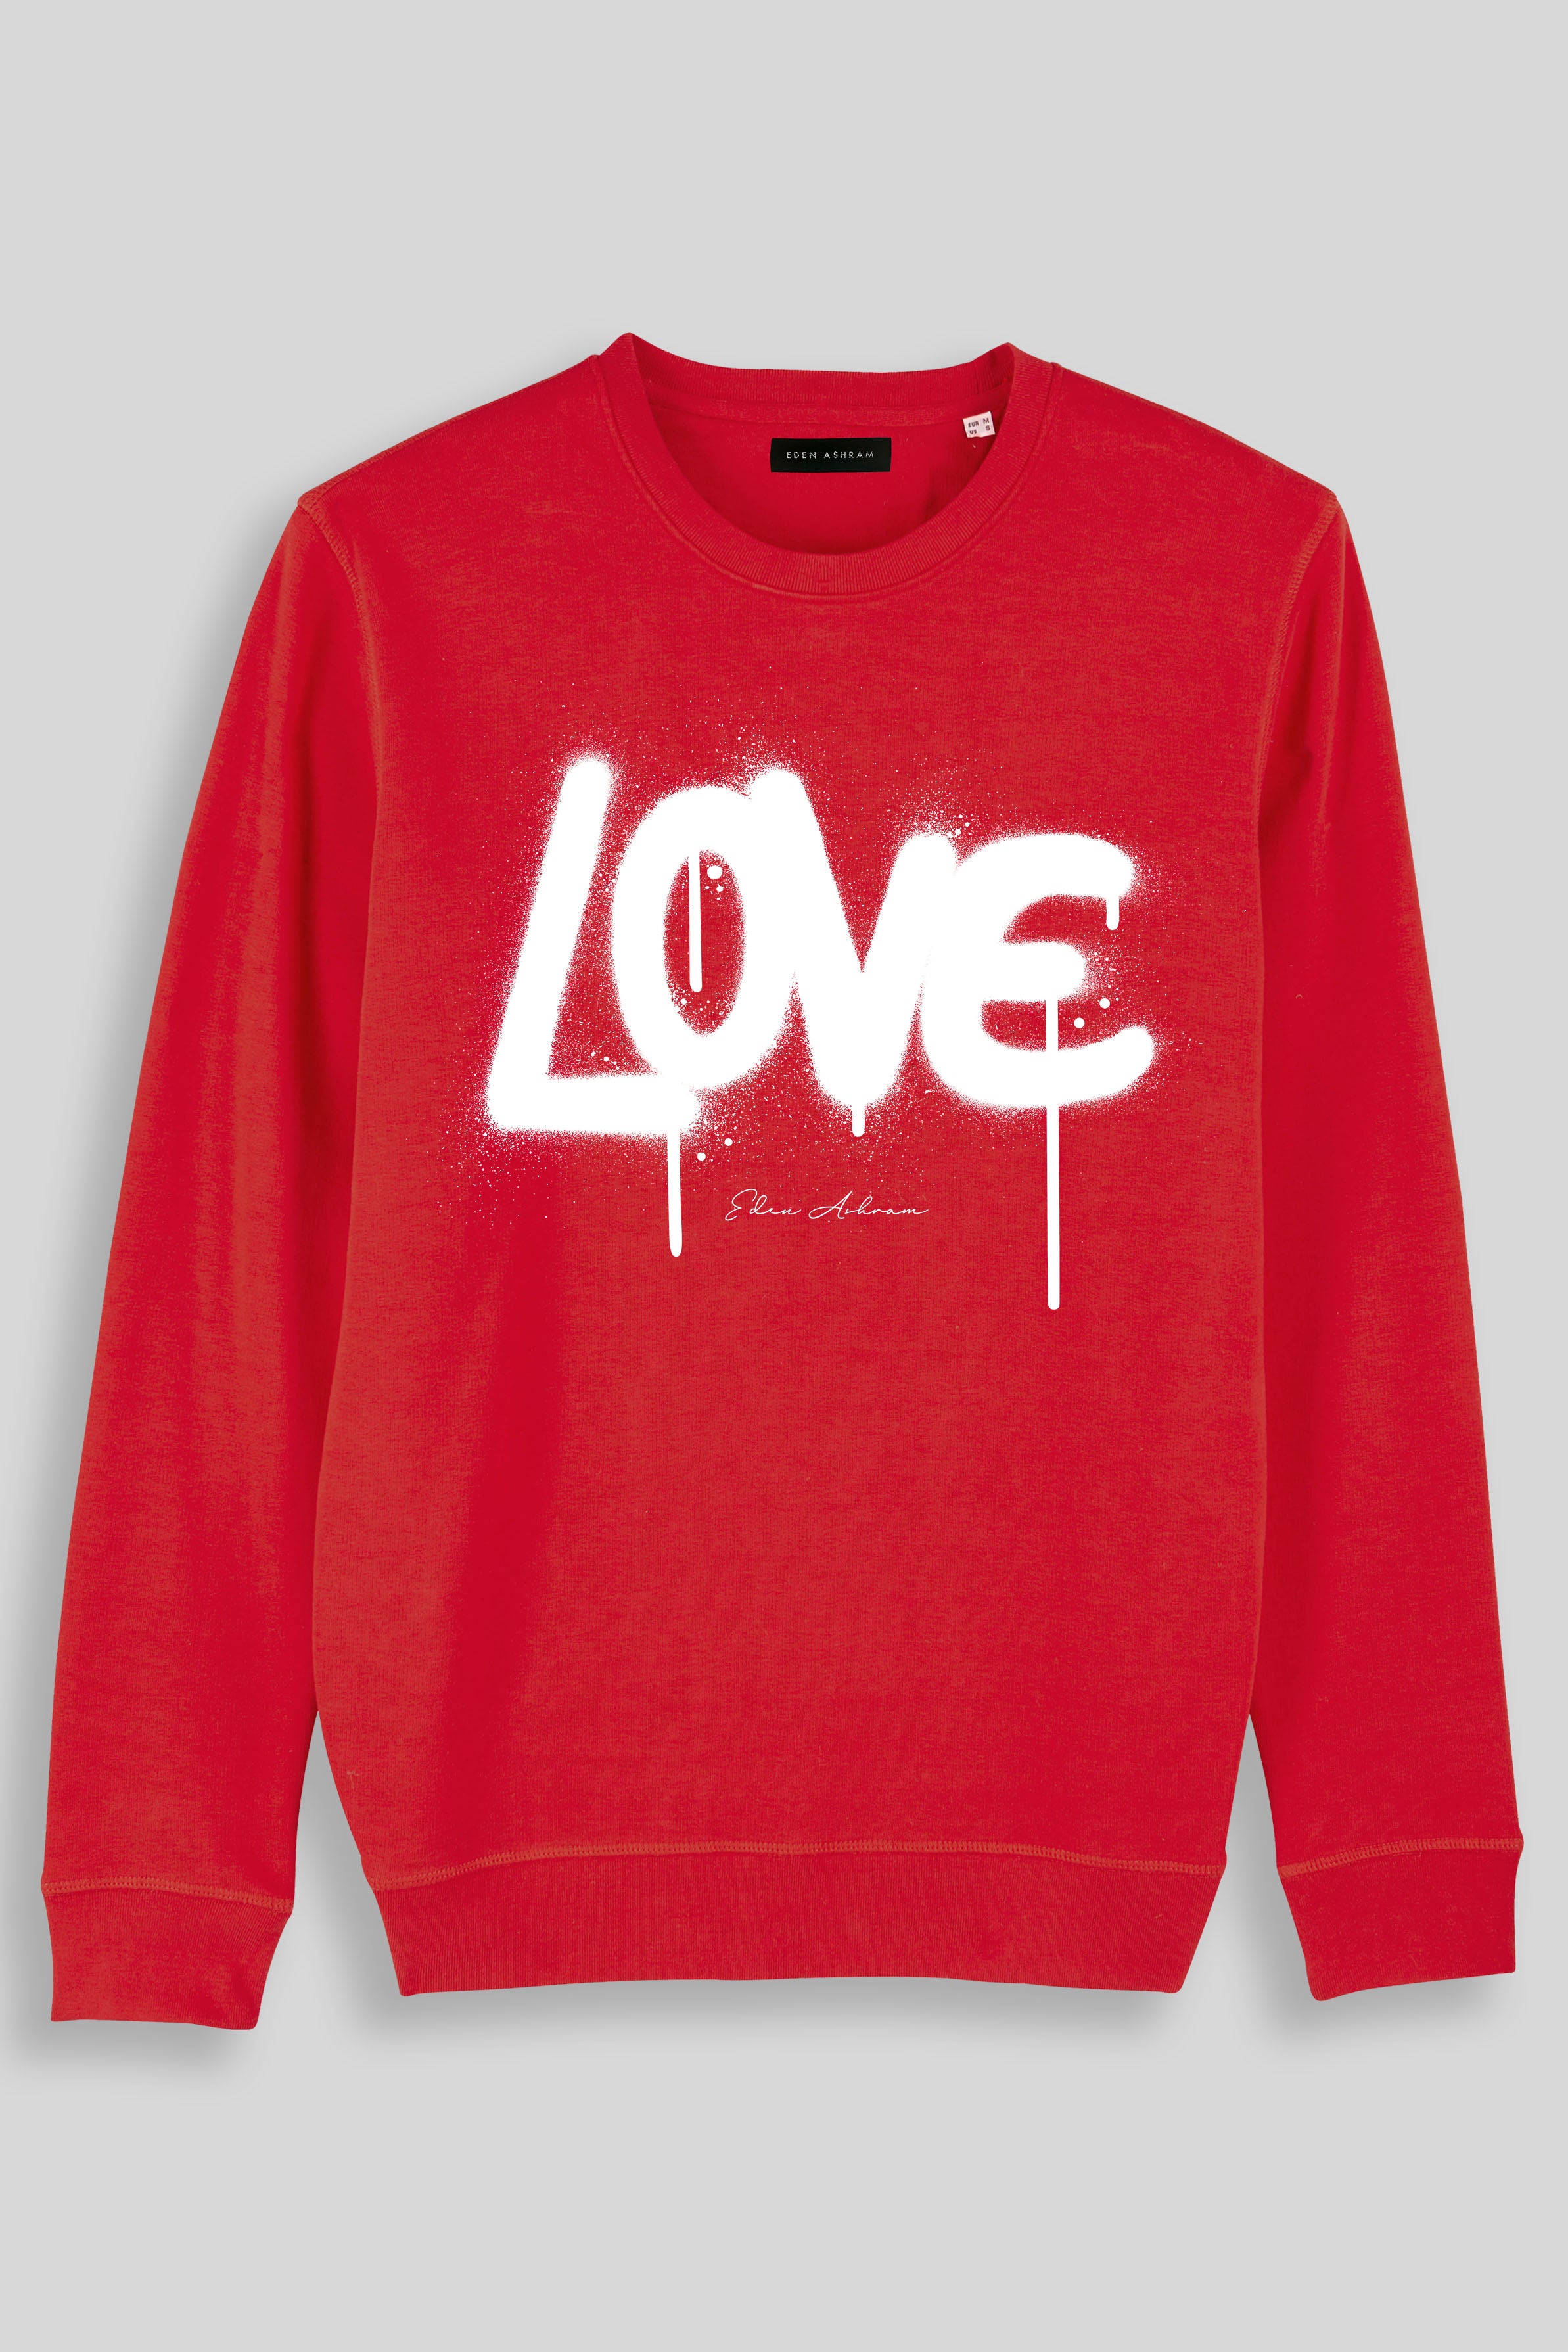 Eden Ashram Graffiti Love Premium Crew Neck Sweatshirt Red